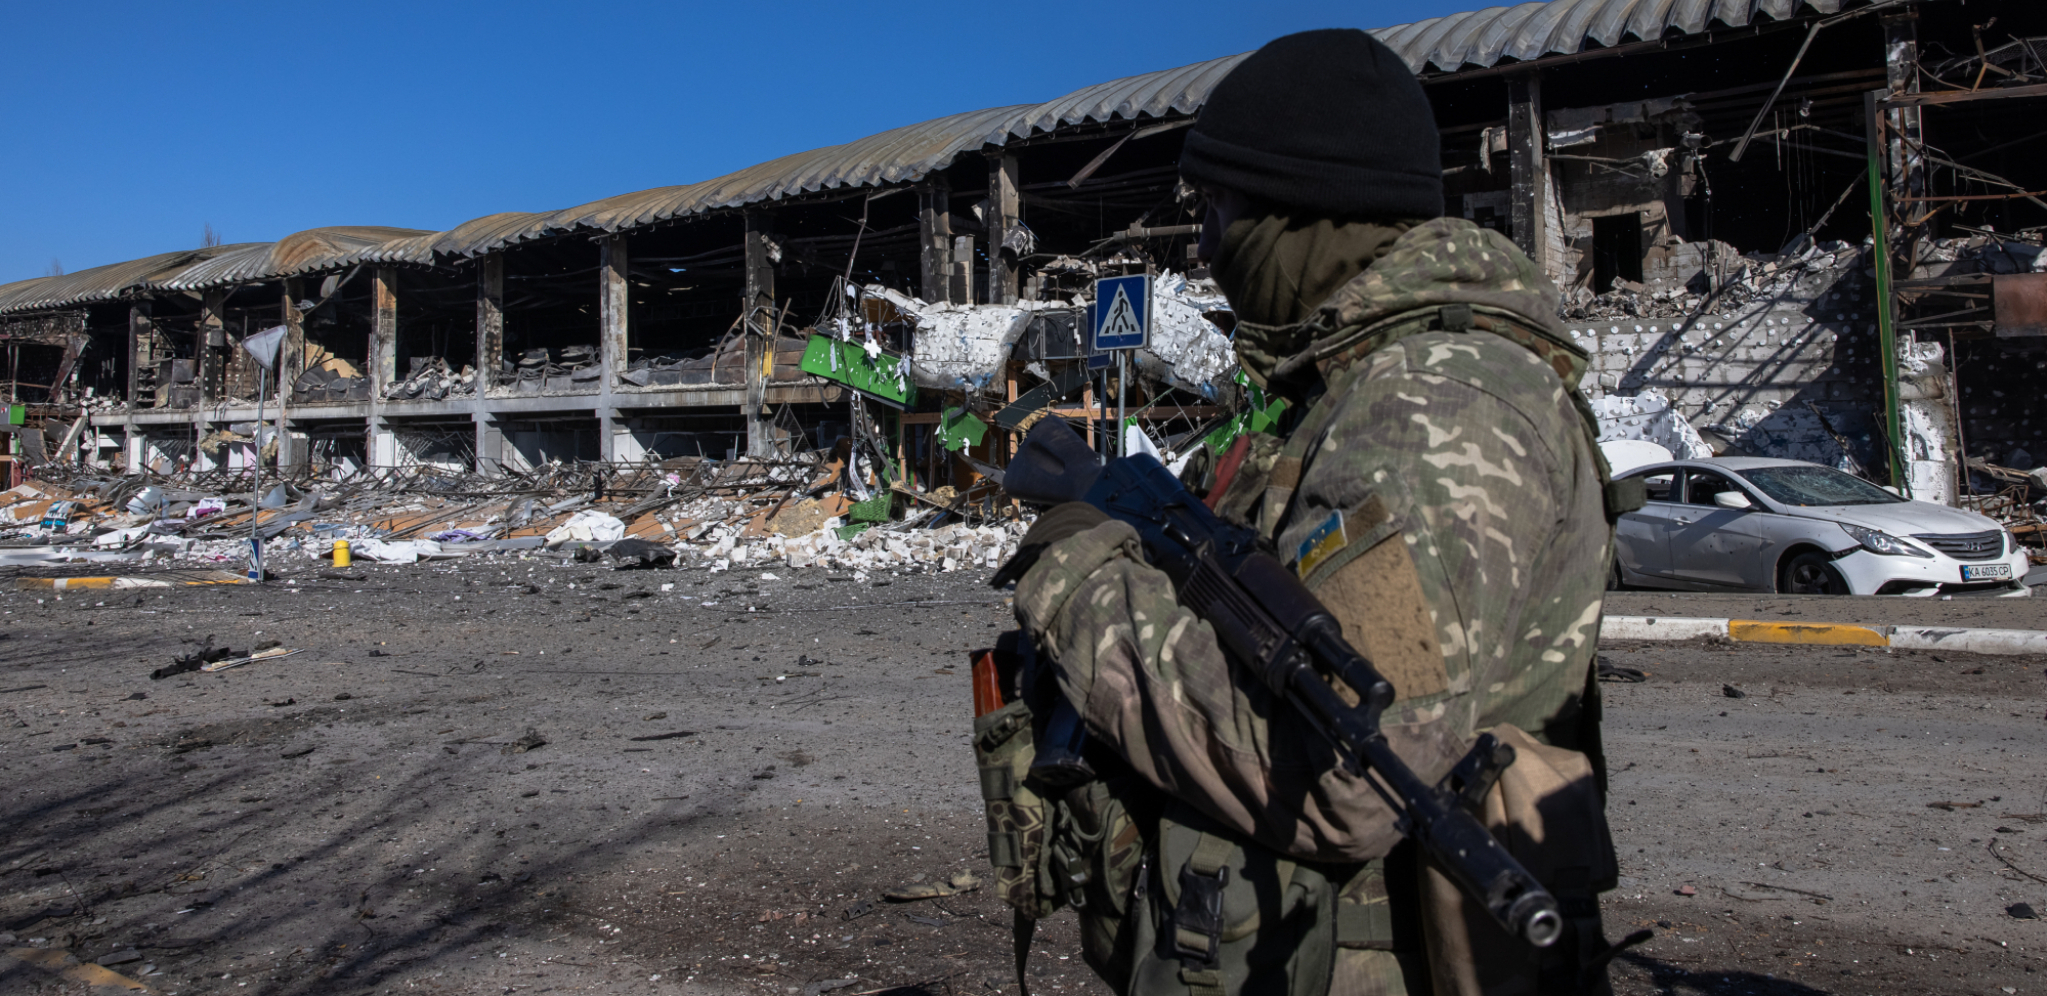 VAŽNA ISLAMSKA ZEMLJA IZRIČITO PROTIV SANKCIJA RUSIJI "Rat u Ukrajini posledica provokacija na račun Moskve"